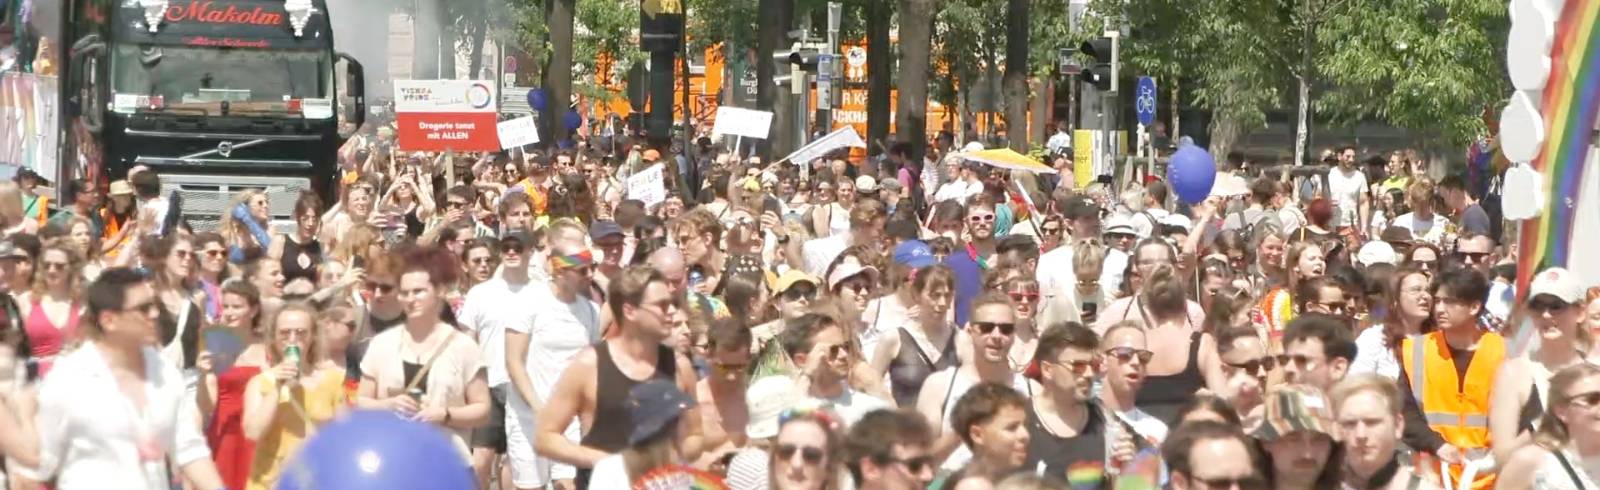 Regenbogenparade: Tausende demonstrieren für mehr Toleranz